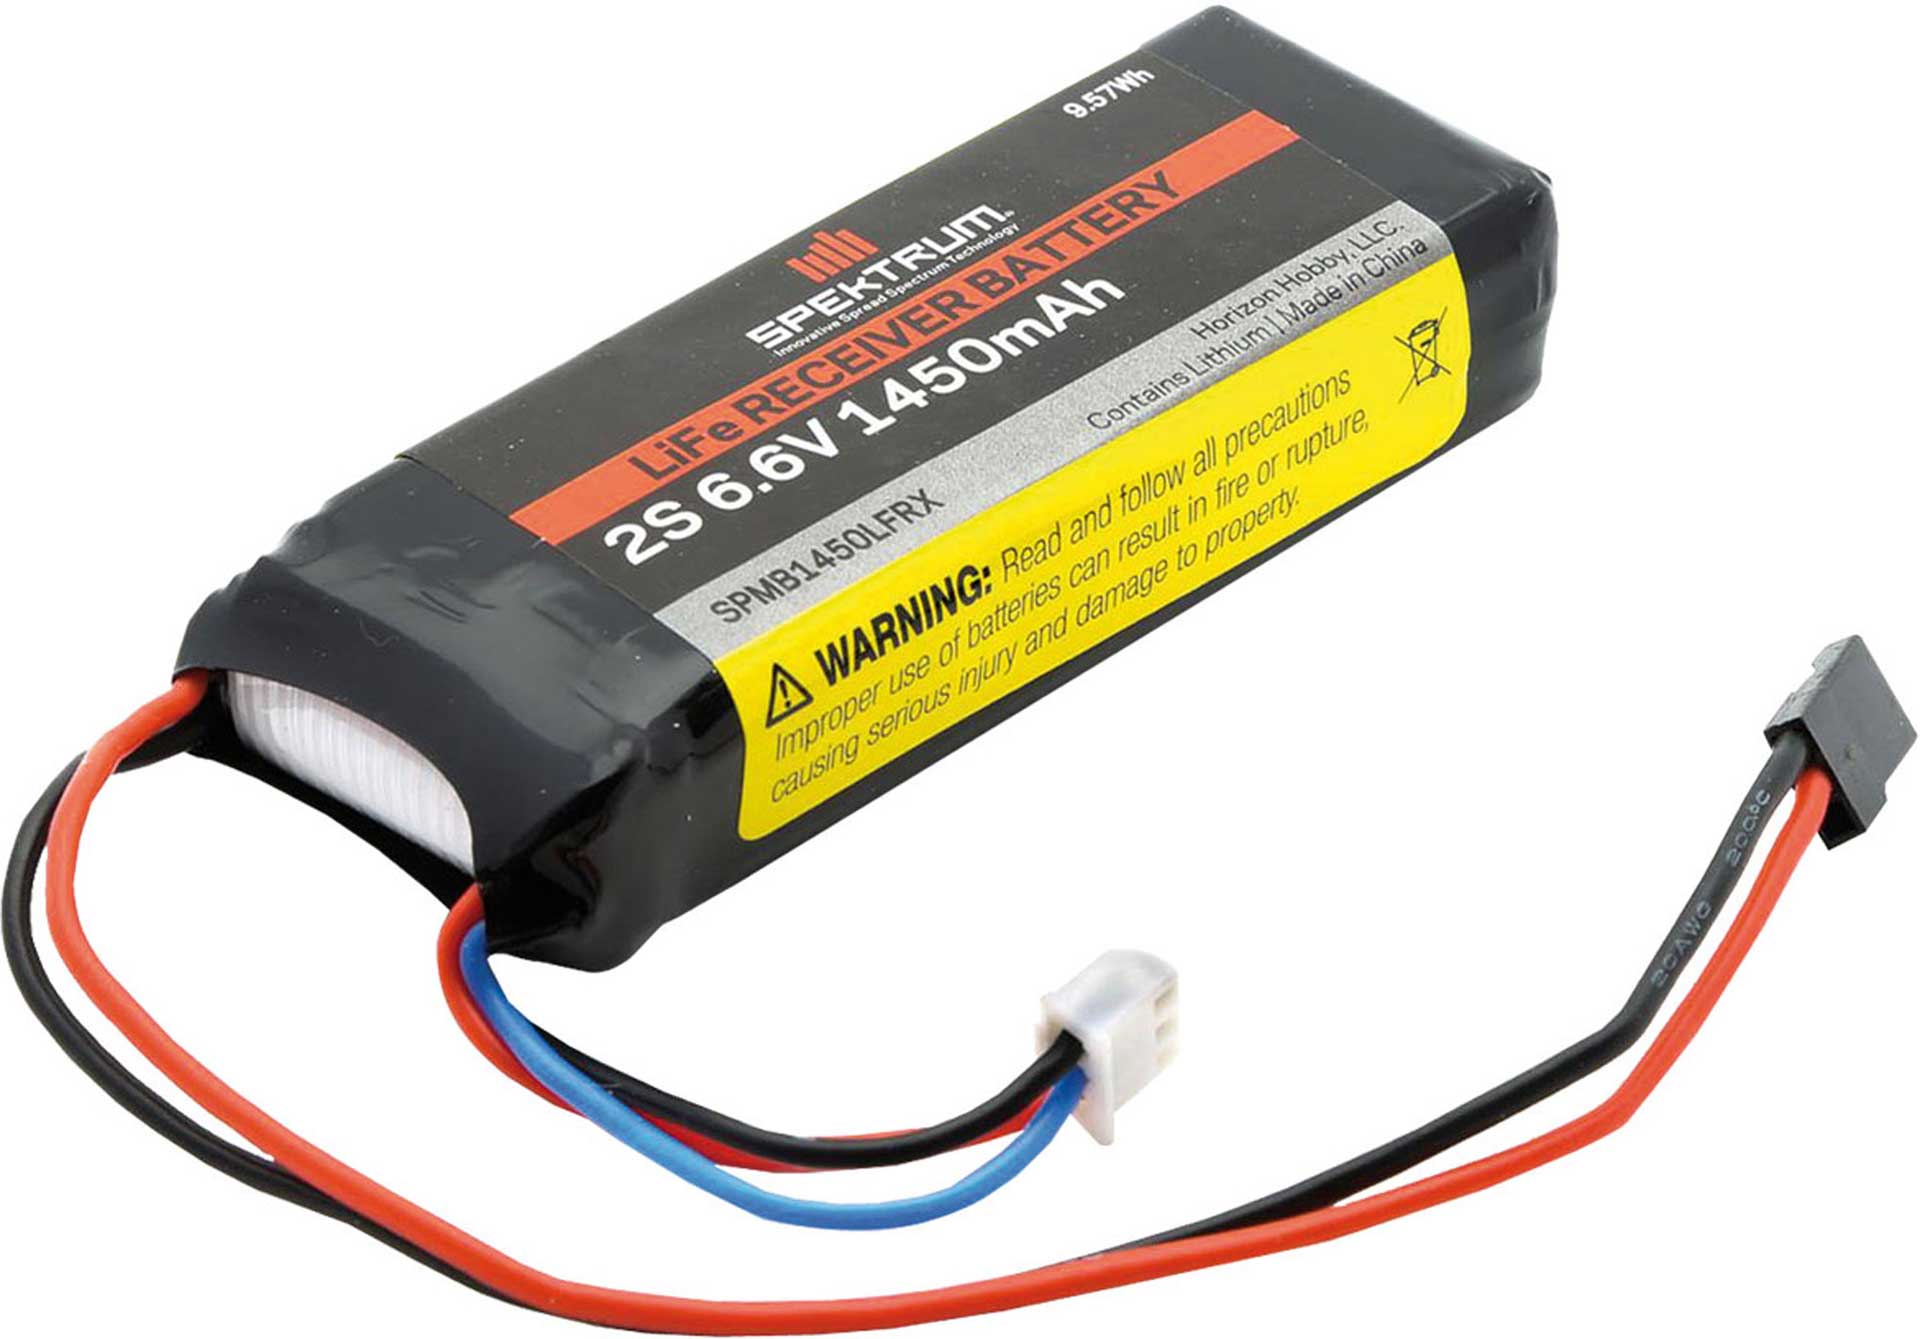 SPEKTRUM 6.6V 1450mAh 2S LiFe Receiver Battery: Universal Receiver